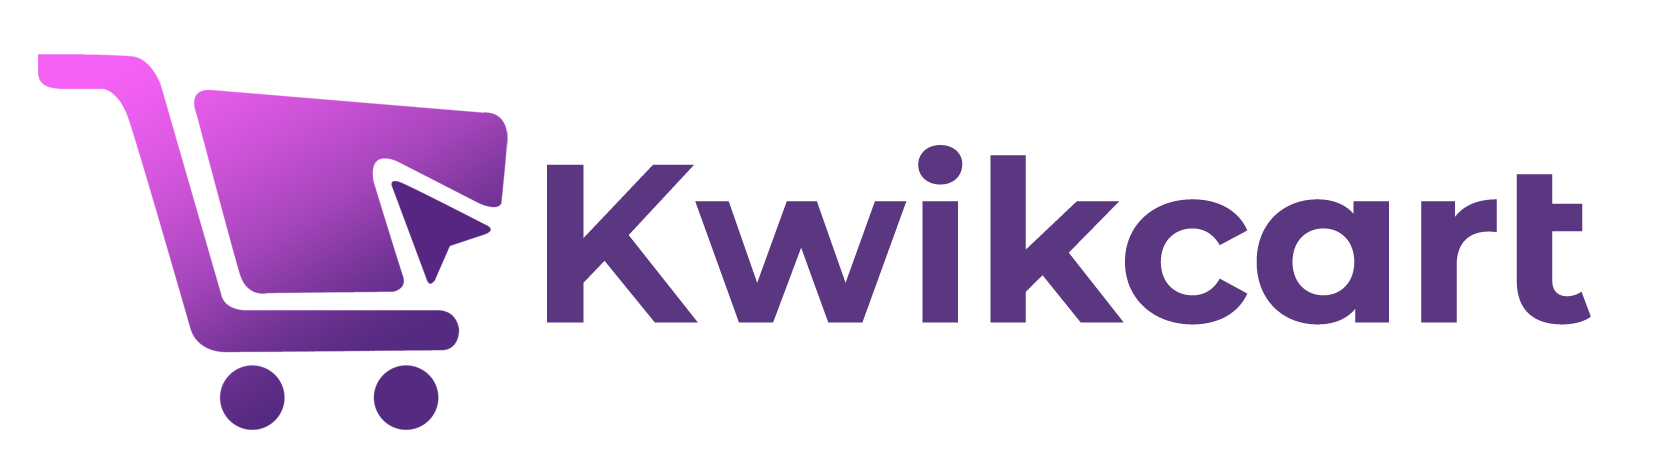 KwikCart Blog